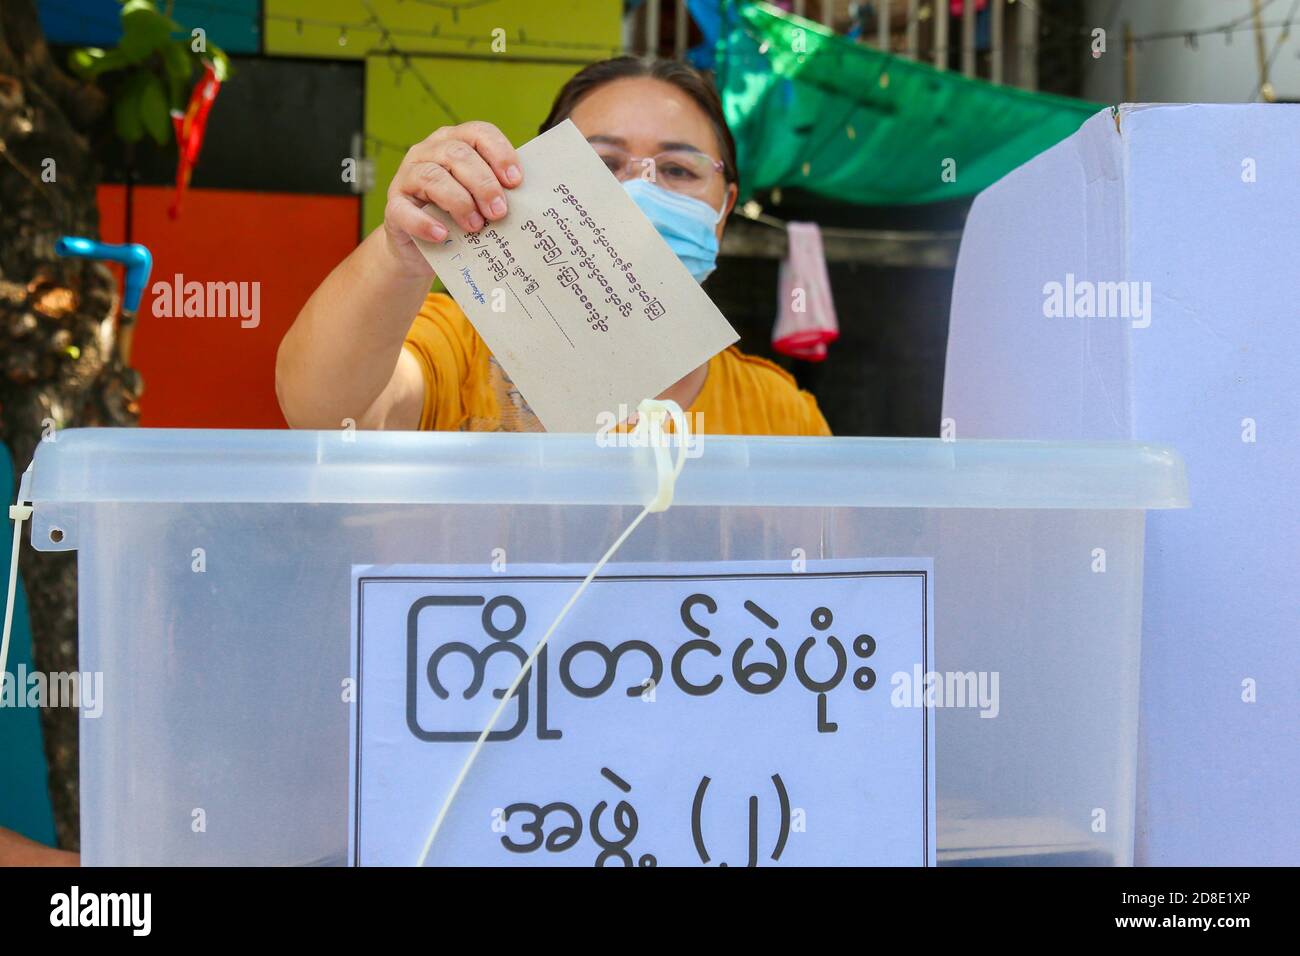 Une femme âgée portant un masque facial et un écran facial lance son bulletin de vote à un bureau de vote.la commission électorale de l'Union vote à l'avance pour les personnes âgées de plus de (60) ans. Les électeurs de plus de (60) ans du canton de Mandalay, Aung Myay Thar Zan, pourront voter à l'avance le matin du 29 octobre. Les élections générales du Myanmar auront lieu le 8 novembre. Banque D'Images